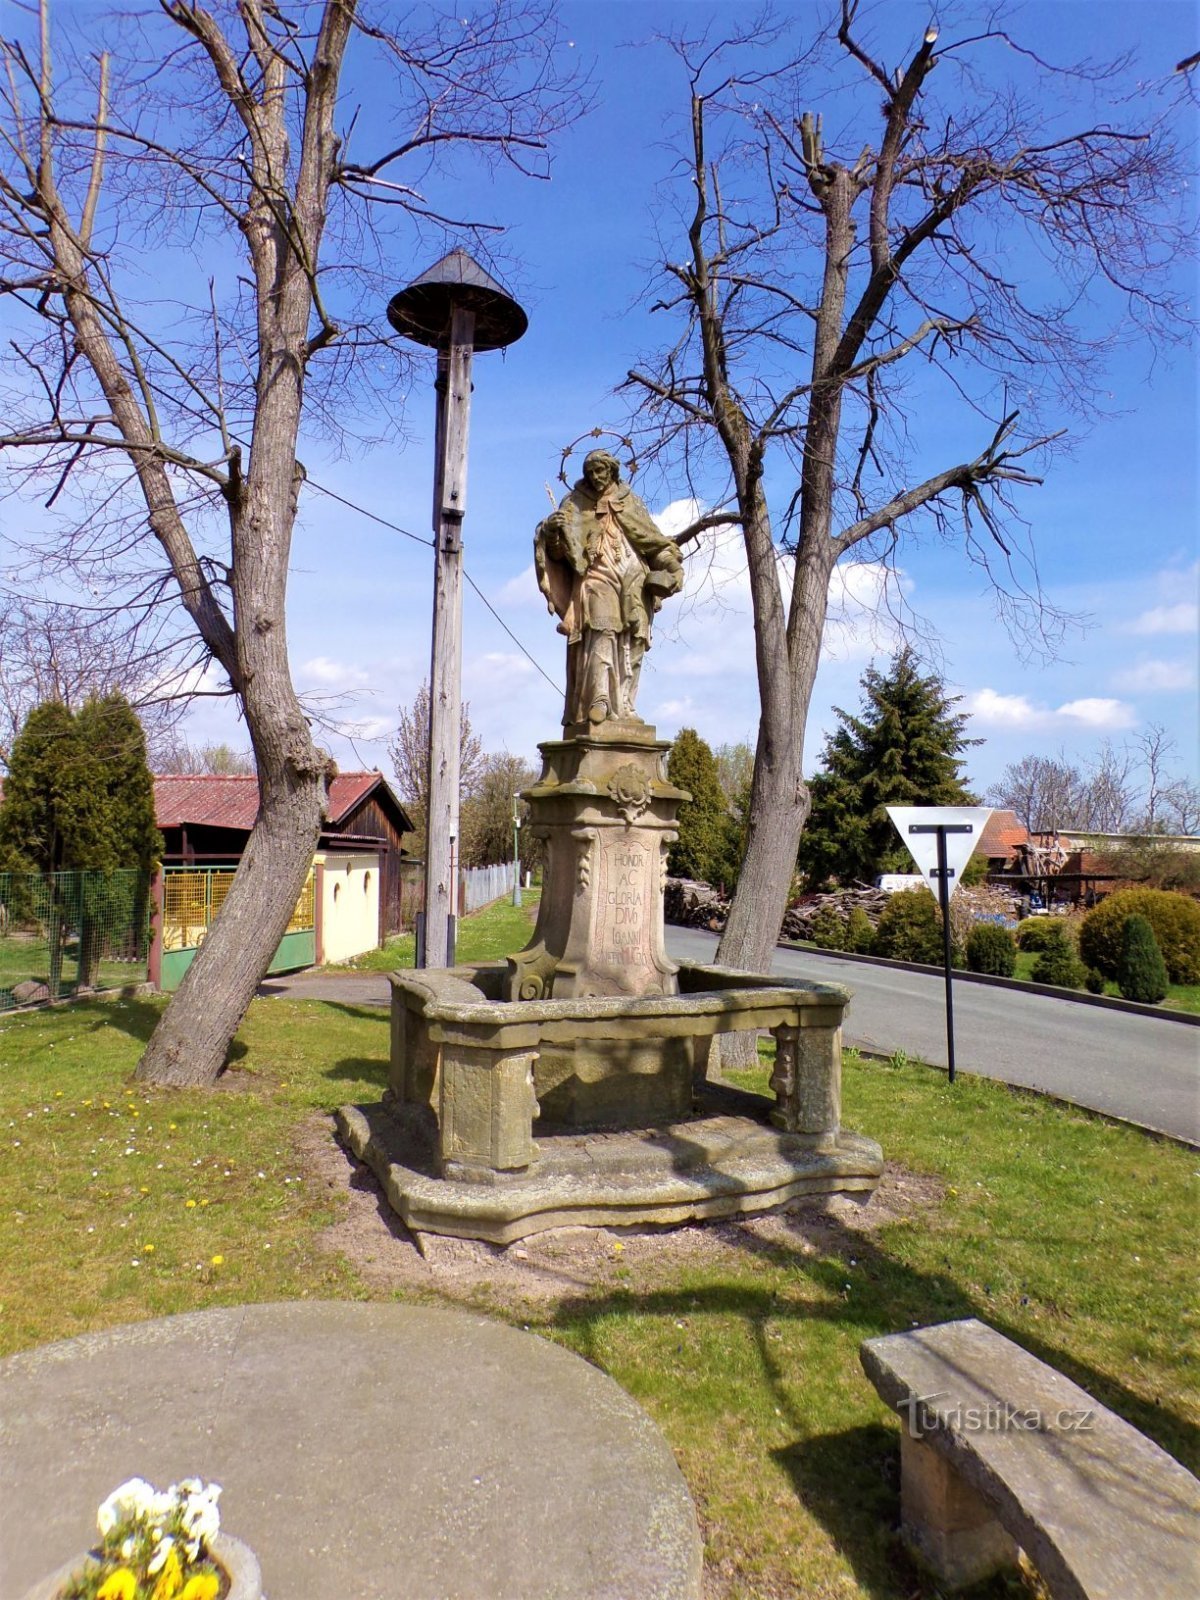 Harangláb Szent szoborral. Jan Nepomucký (Šaplava, 30.4.2021.)